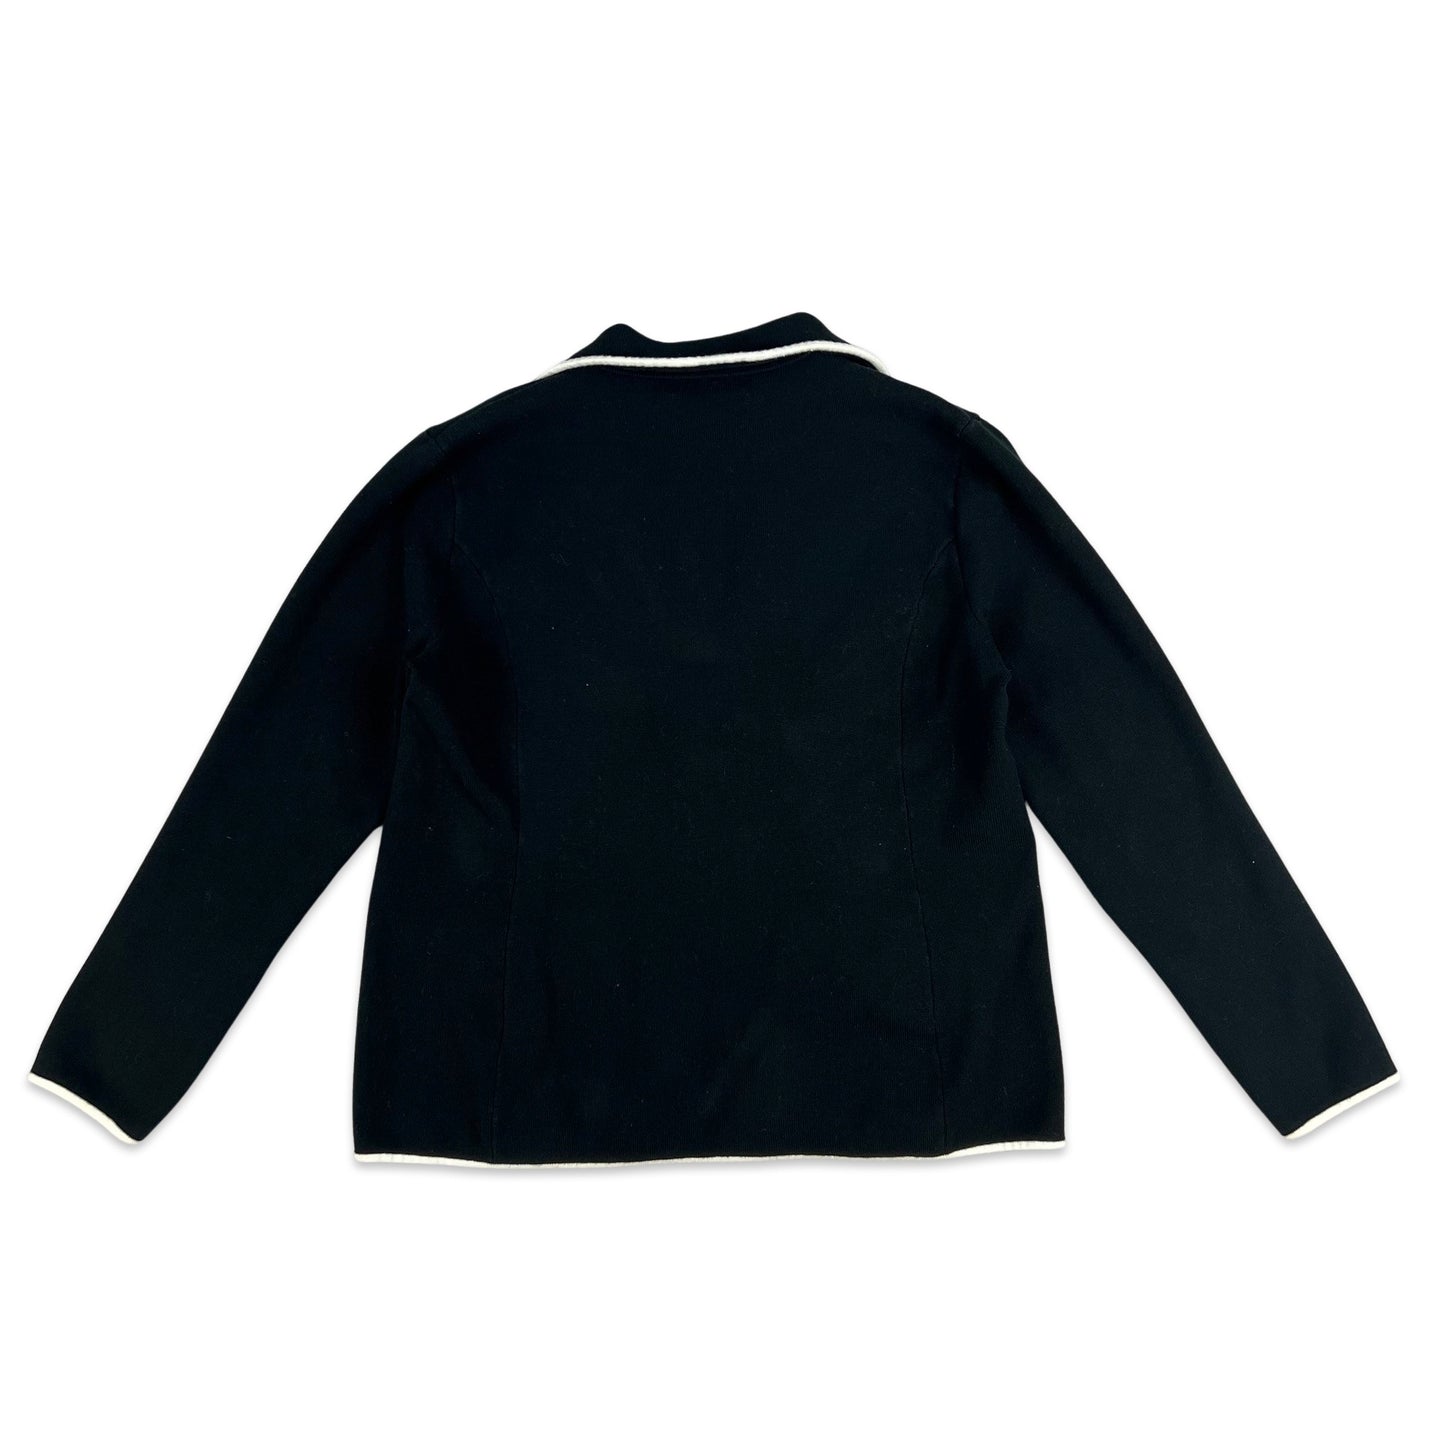 Vintage Ralph Lauren Knit Blazer Jacket Black White 12 14 16